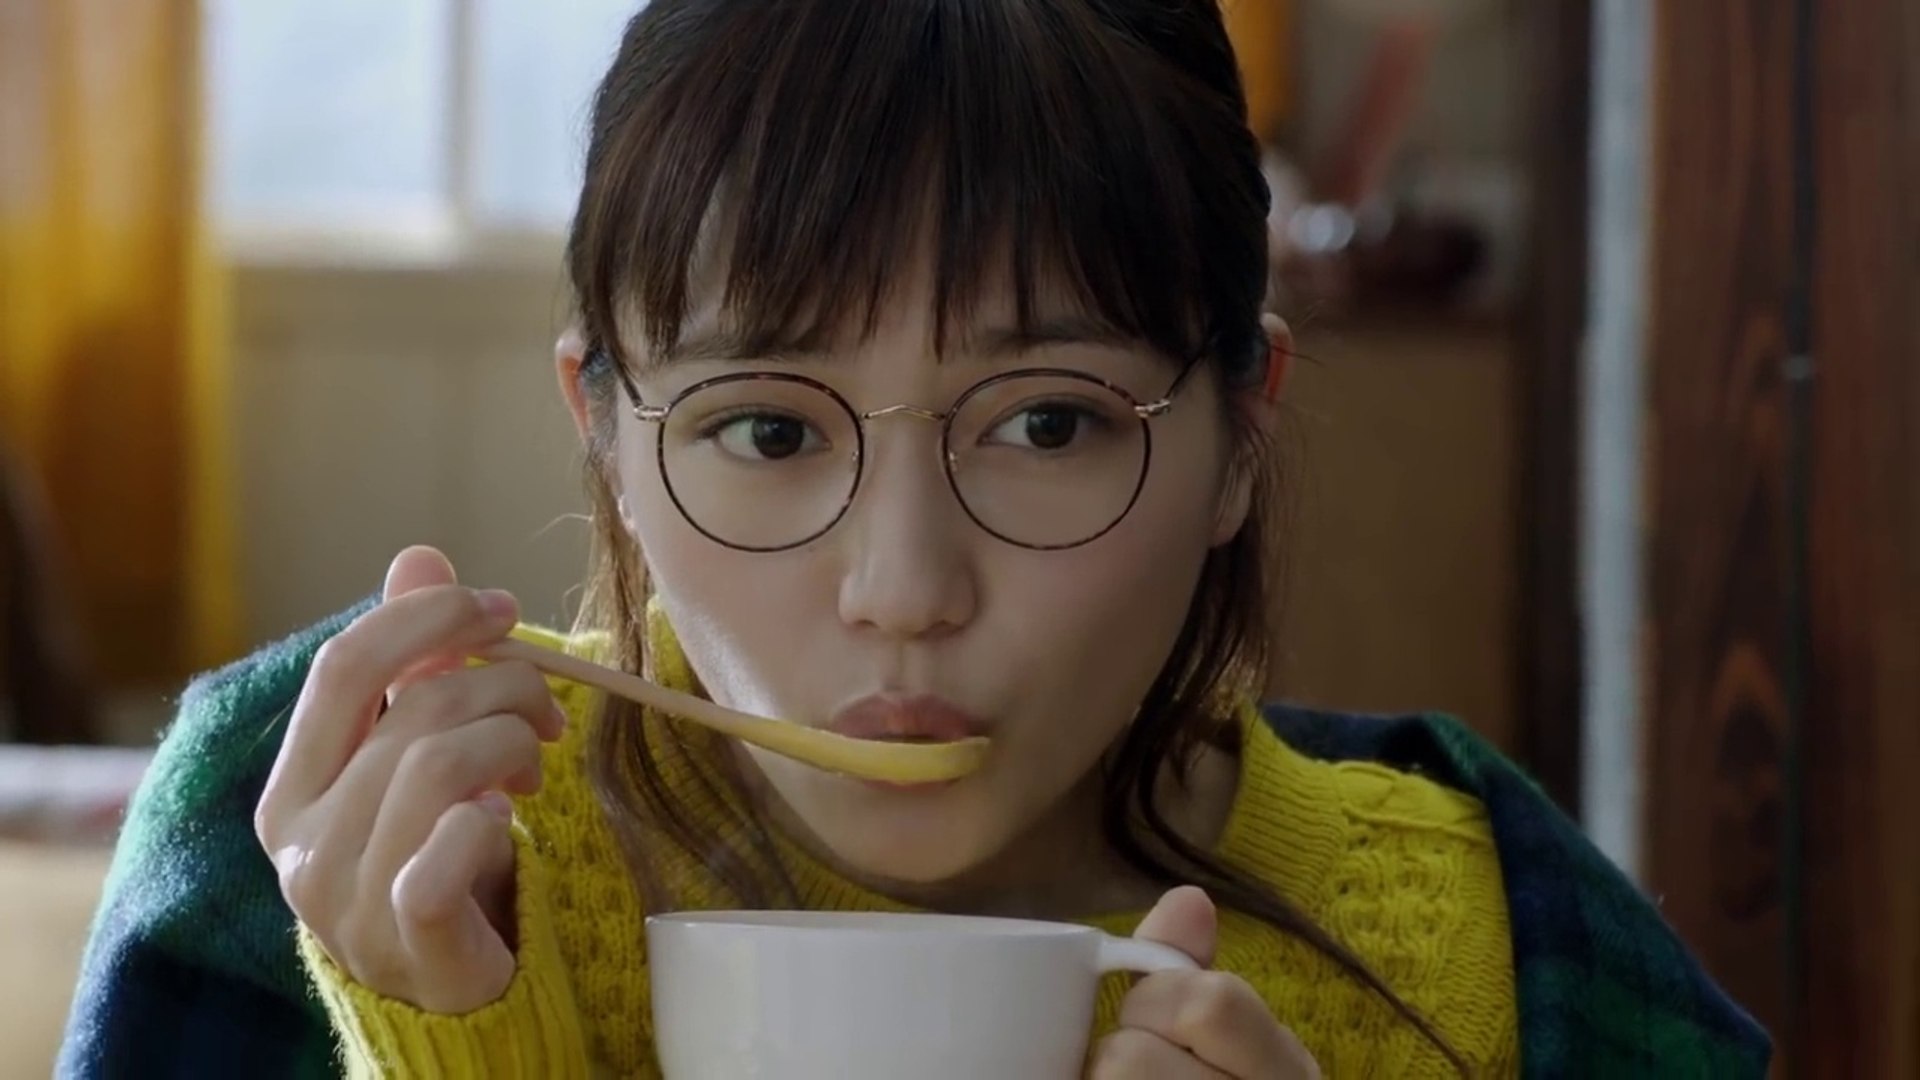 川口春奈 Cm クノール カップスープ うちの温朝食 カボチャ眼鏡 篇 １５秒 動画 Dailymotion